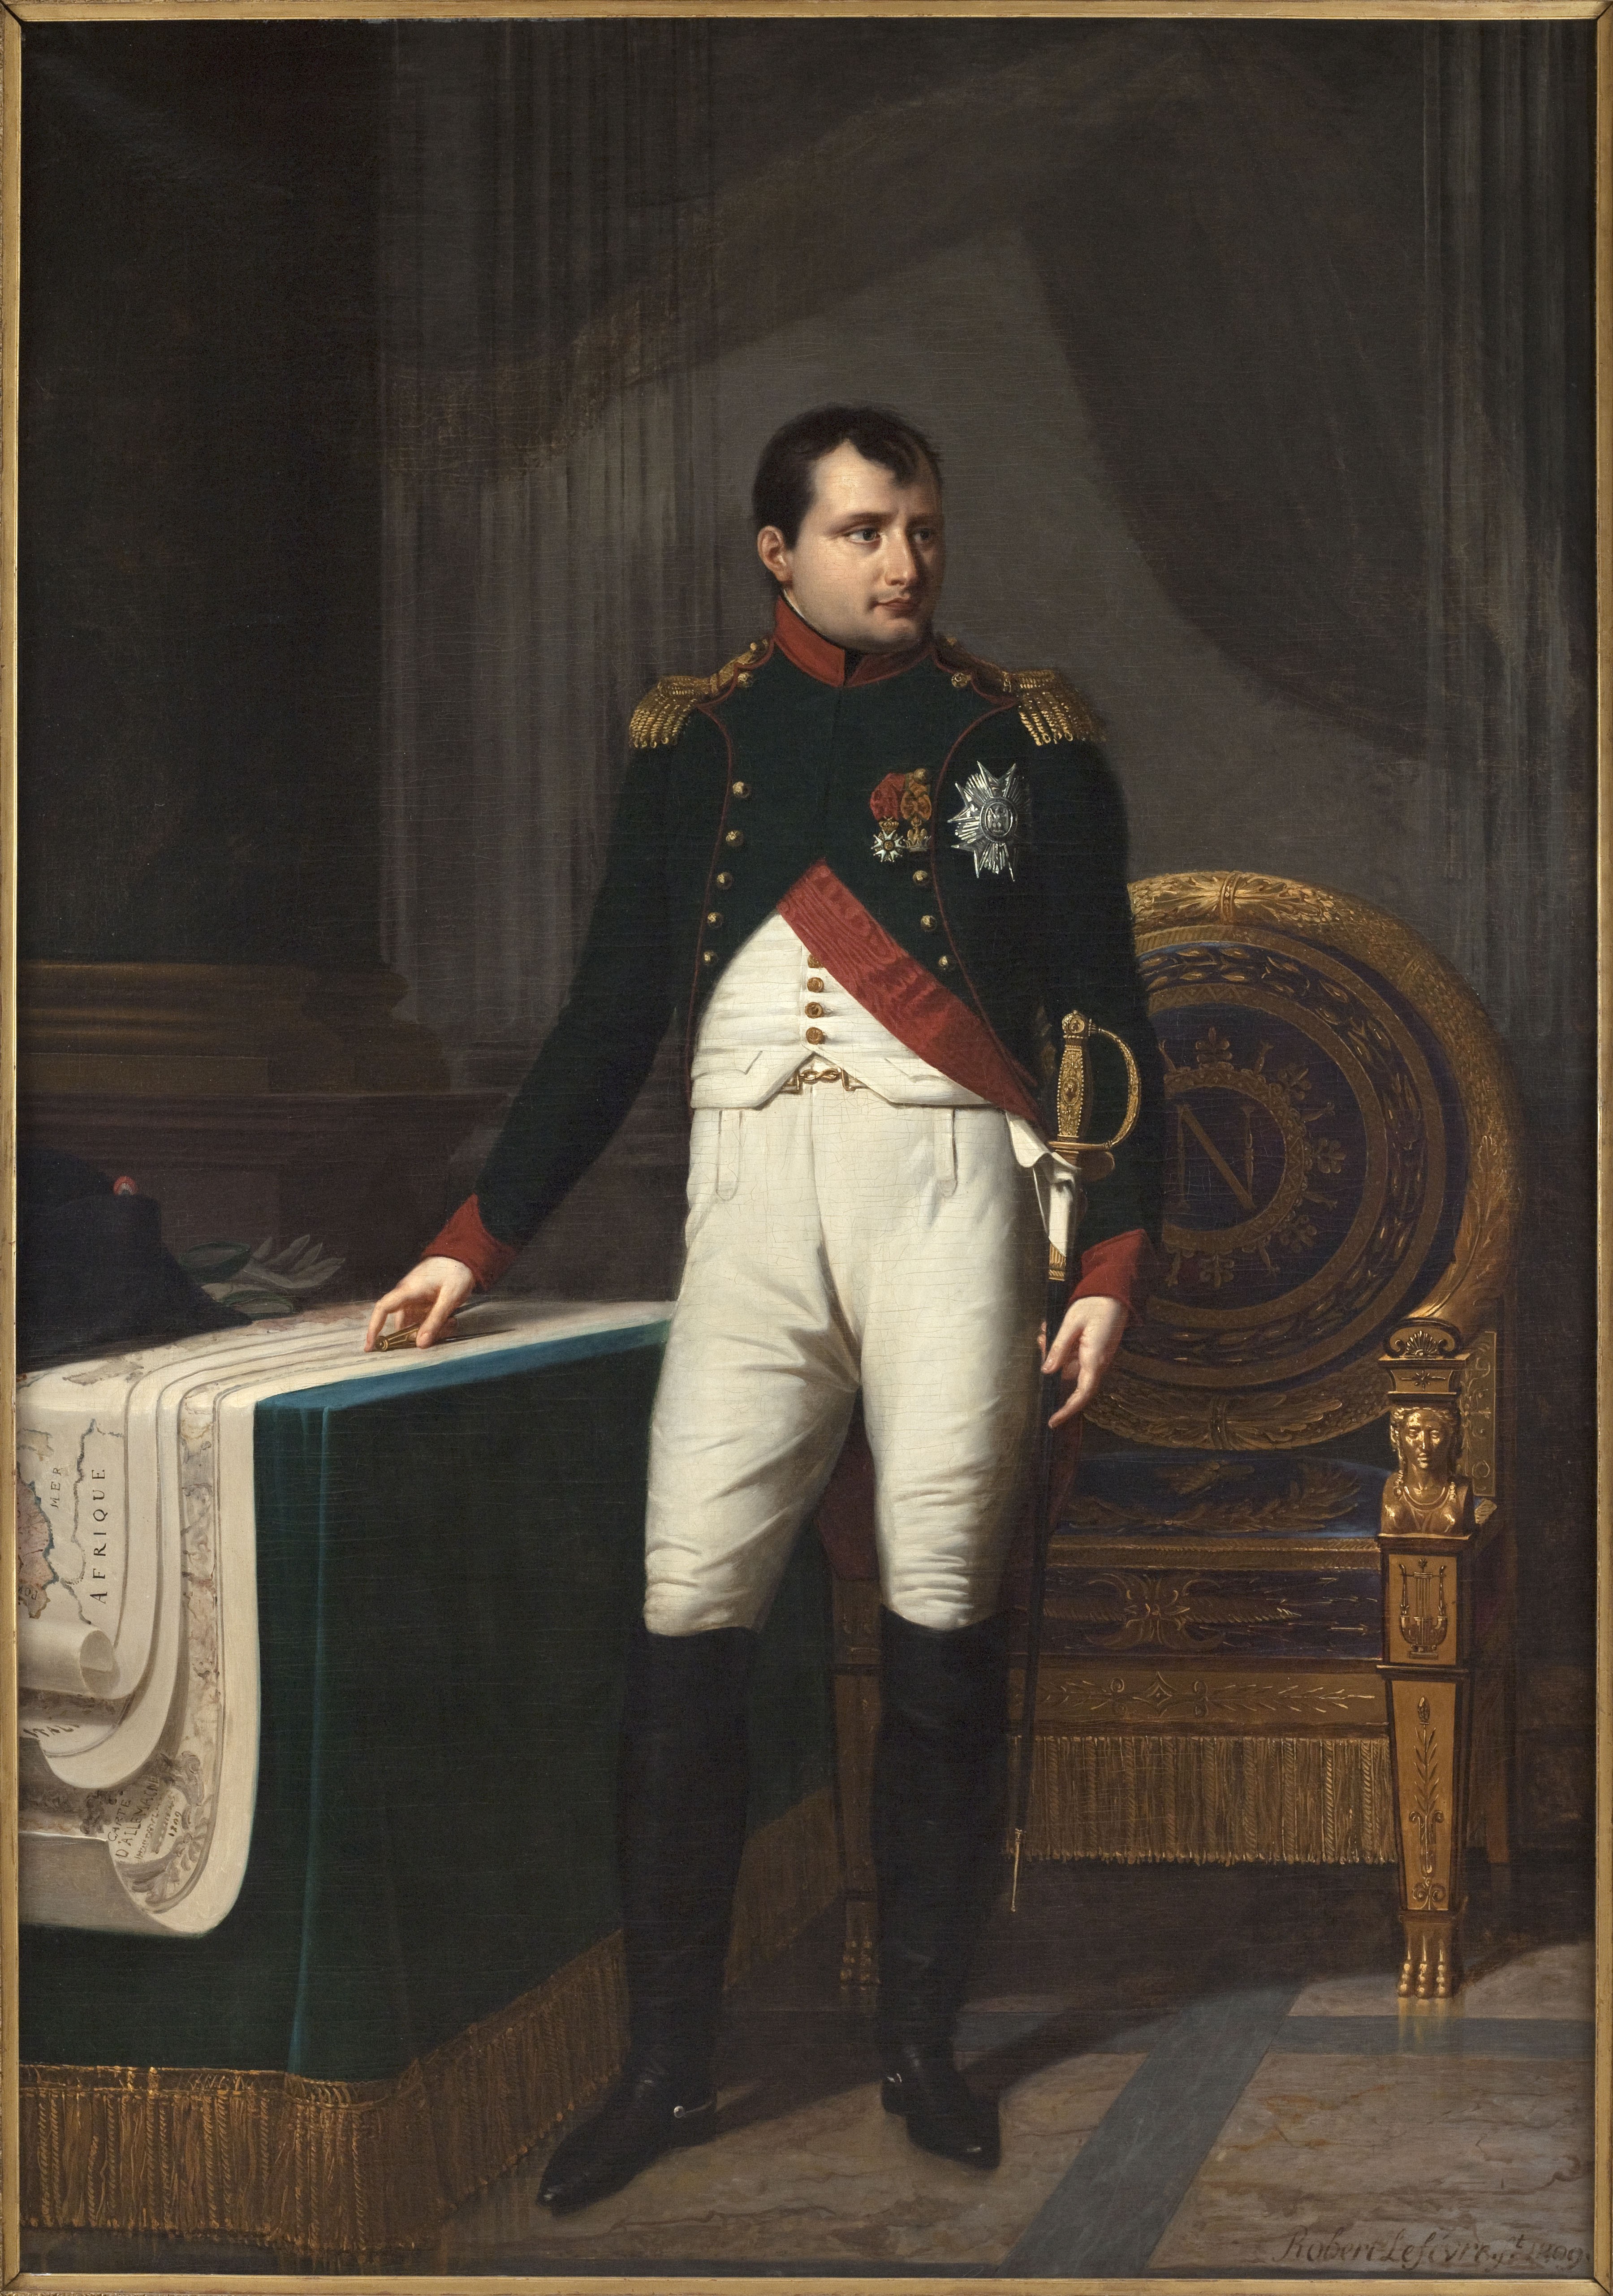 A mostra reúne retratos do Imperador, como o feito por Robert Lefèvre em 1809, e cenas cotidianas de Paris durante seu reinado (Foto: Musée Carnavalet / Roger-Viollet)